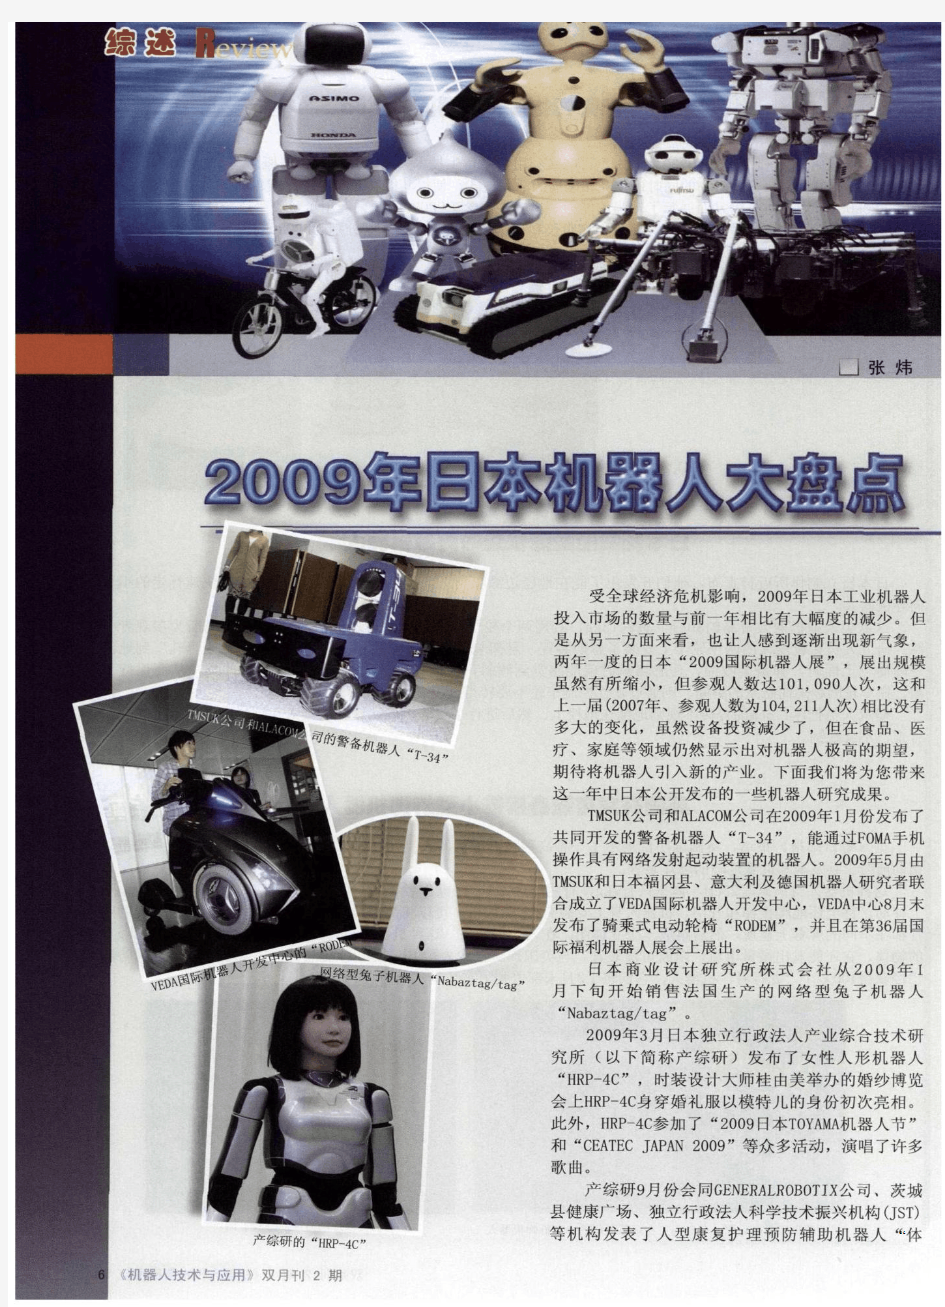 2009年日本机器人大盘点